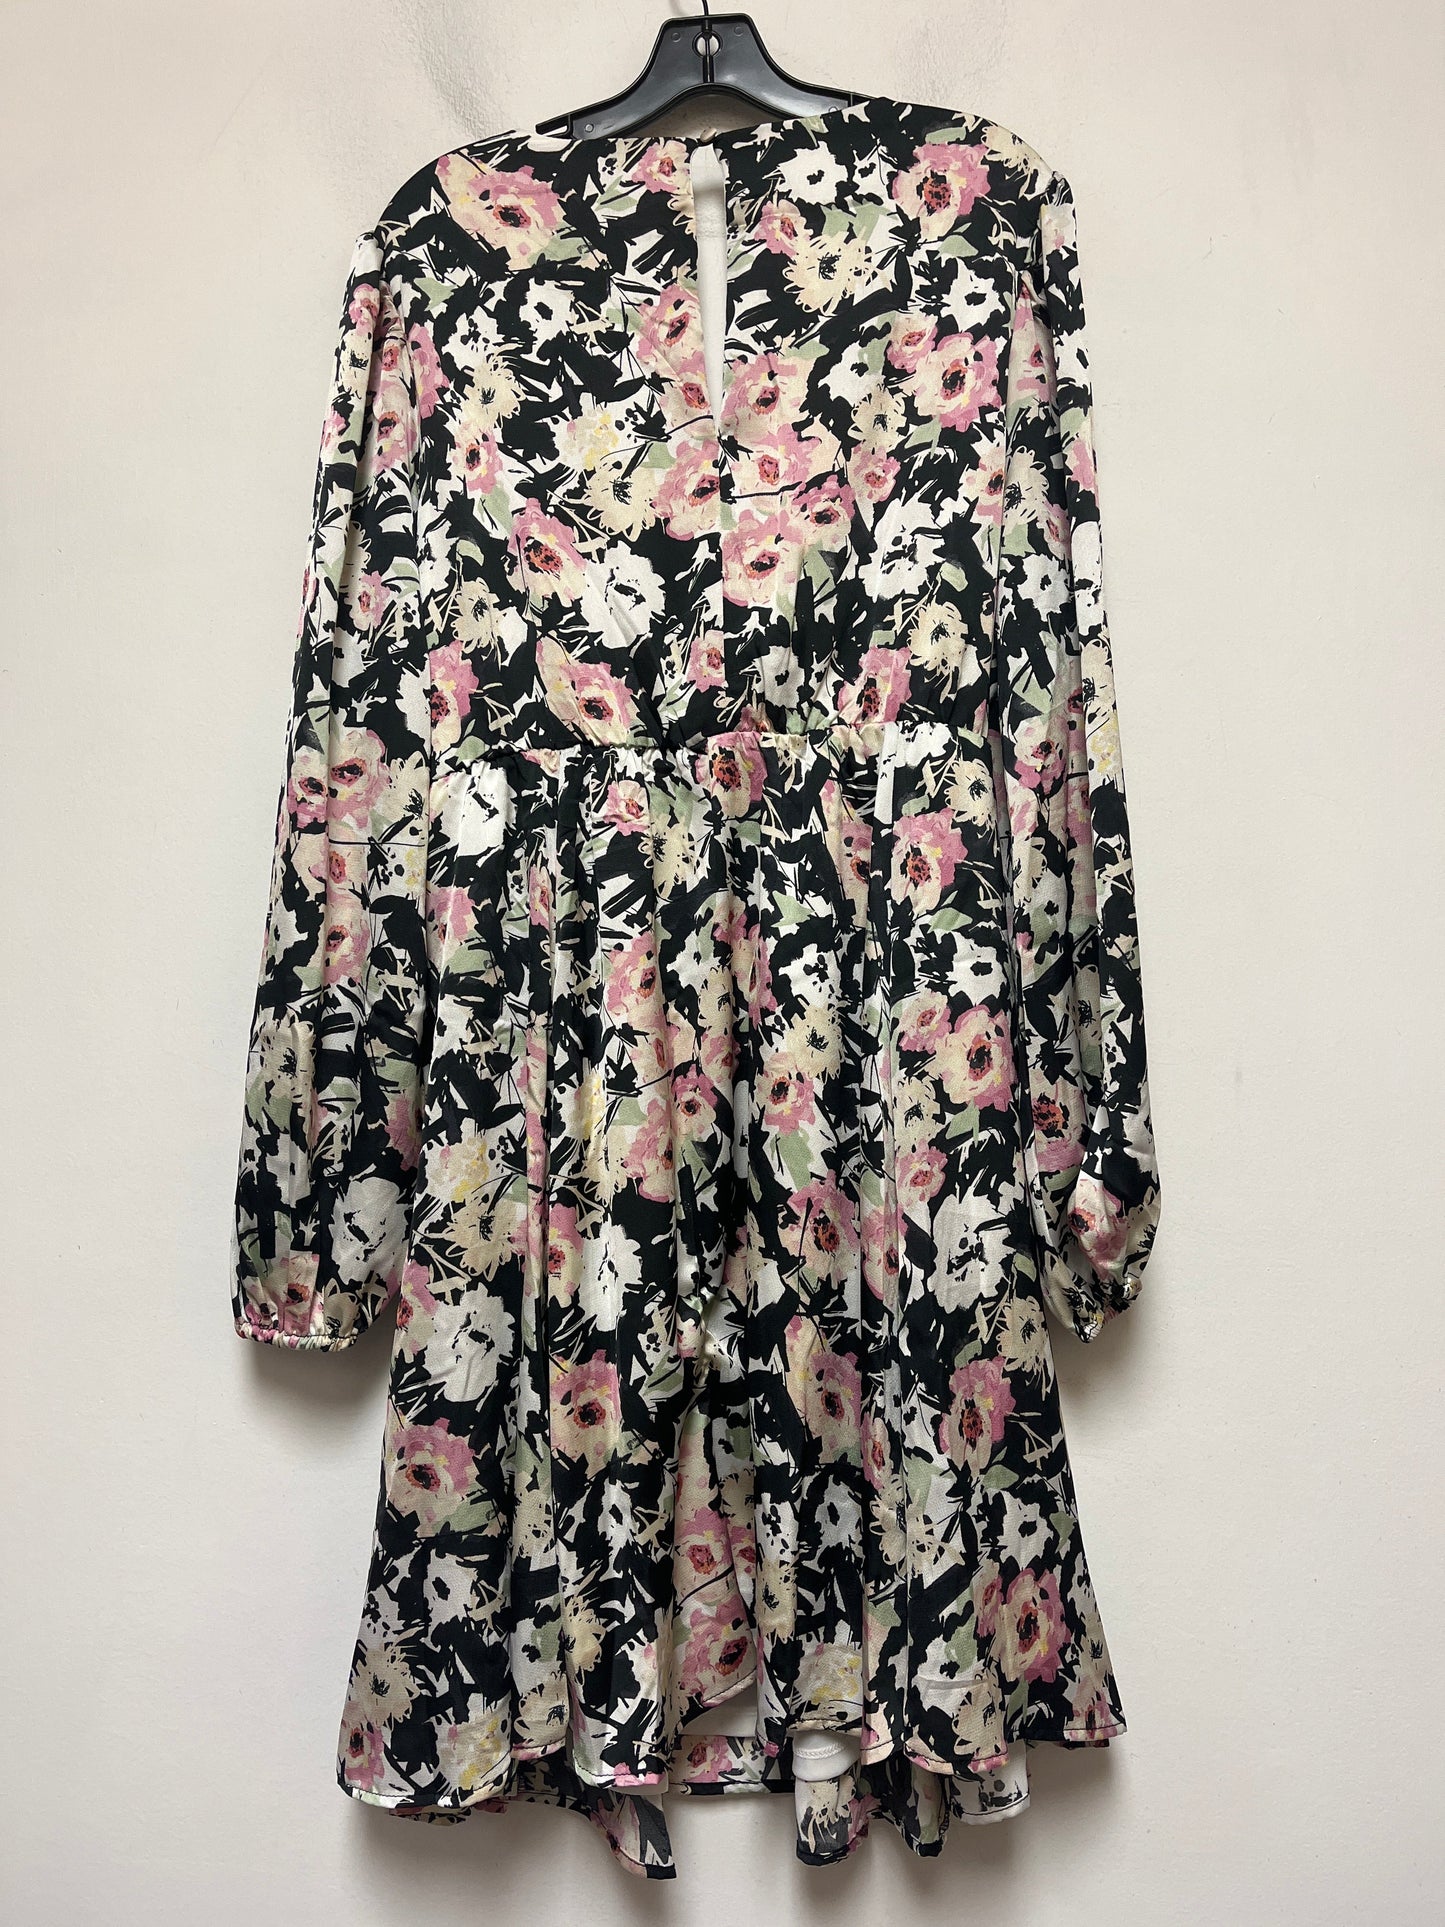 Floral Print Dress Casual Midi Torrid, Size 1x